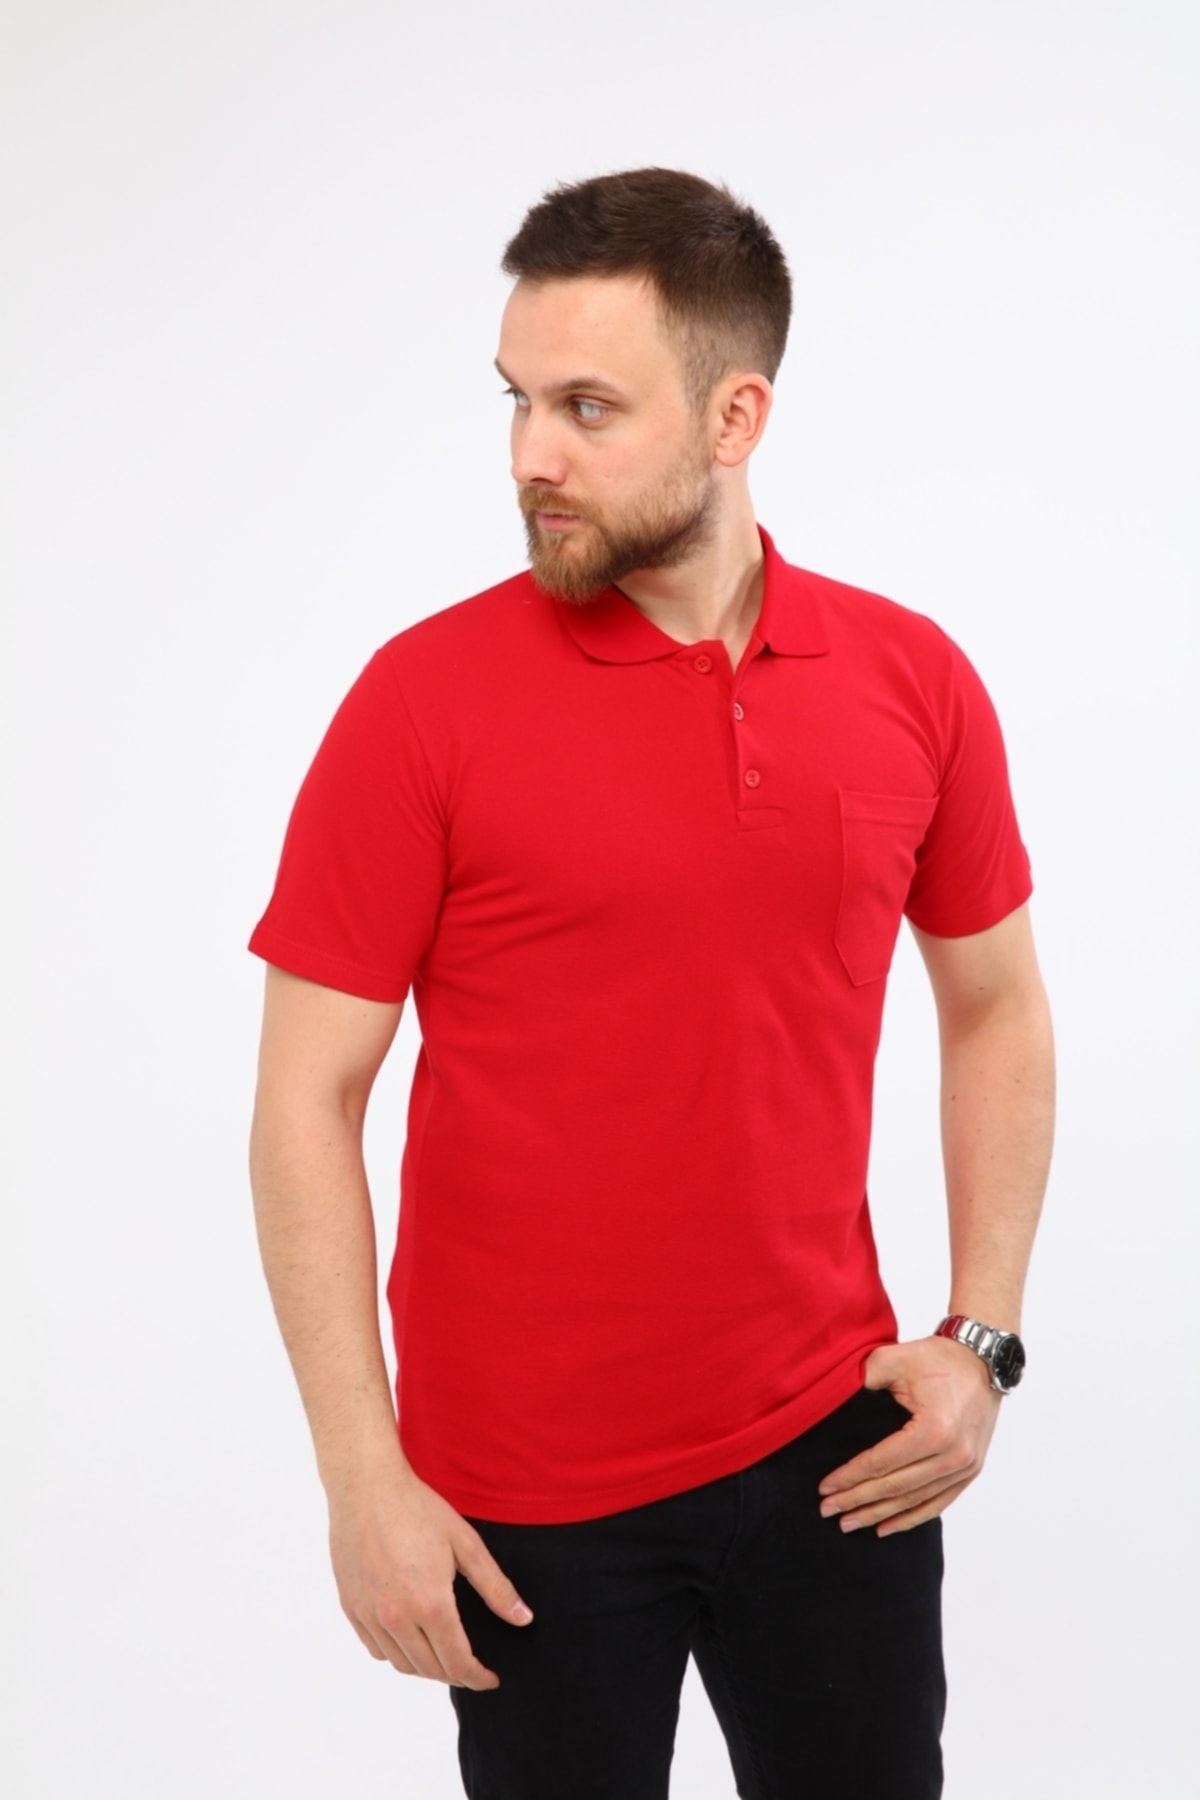 Çamdalı İş Elbiseleri Polo Yaka T-shirt Kırmızı Kısa Kollu Pike Örme Iş Tişörtü